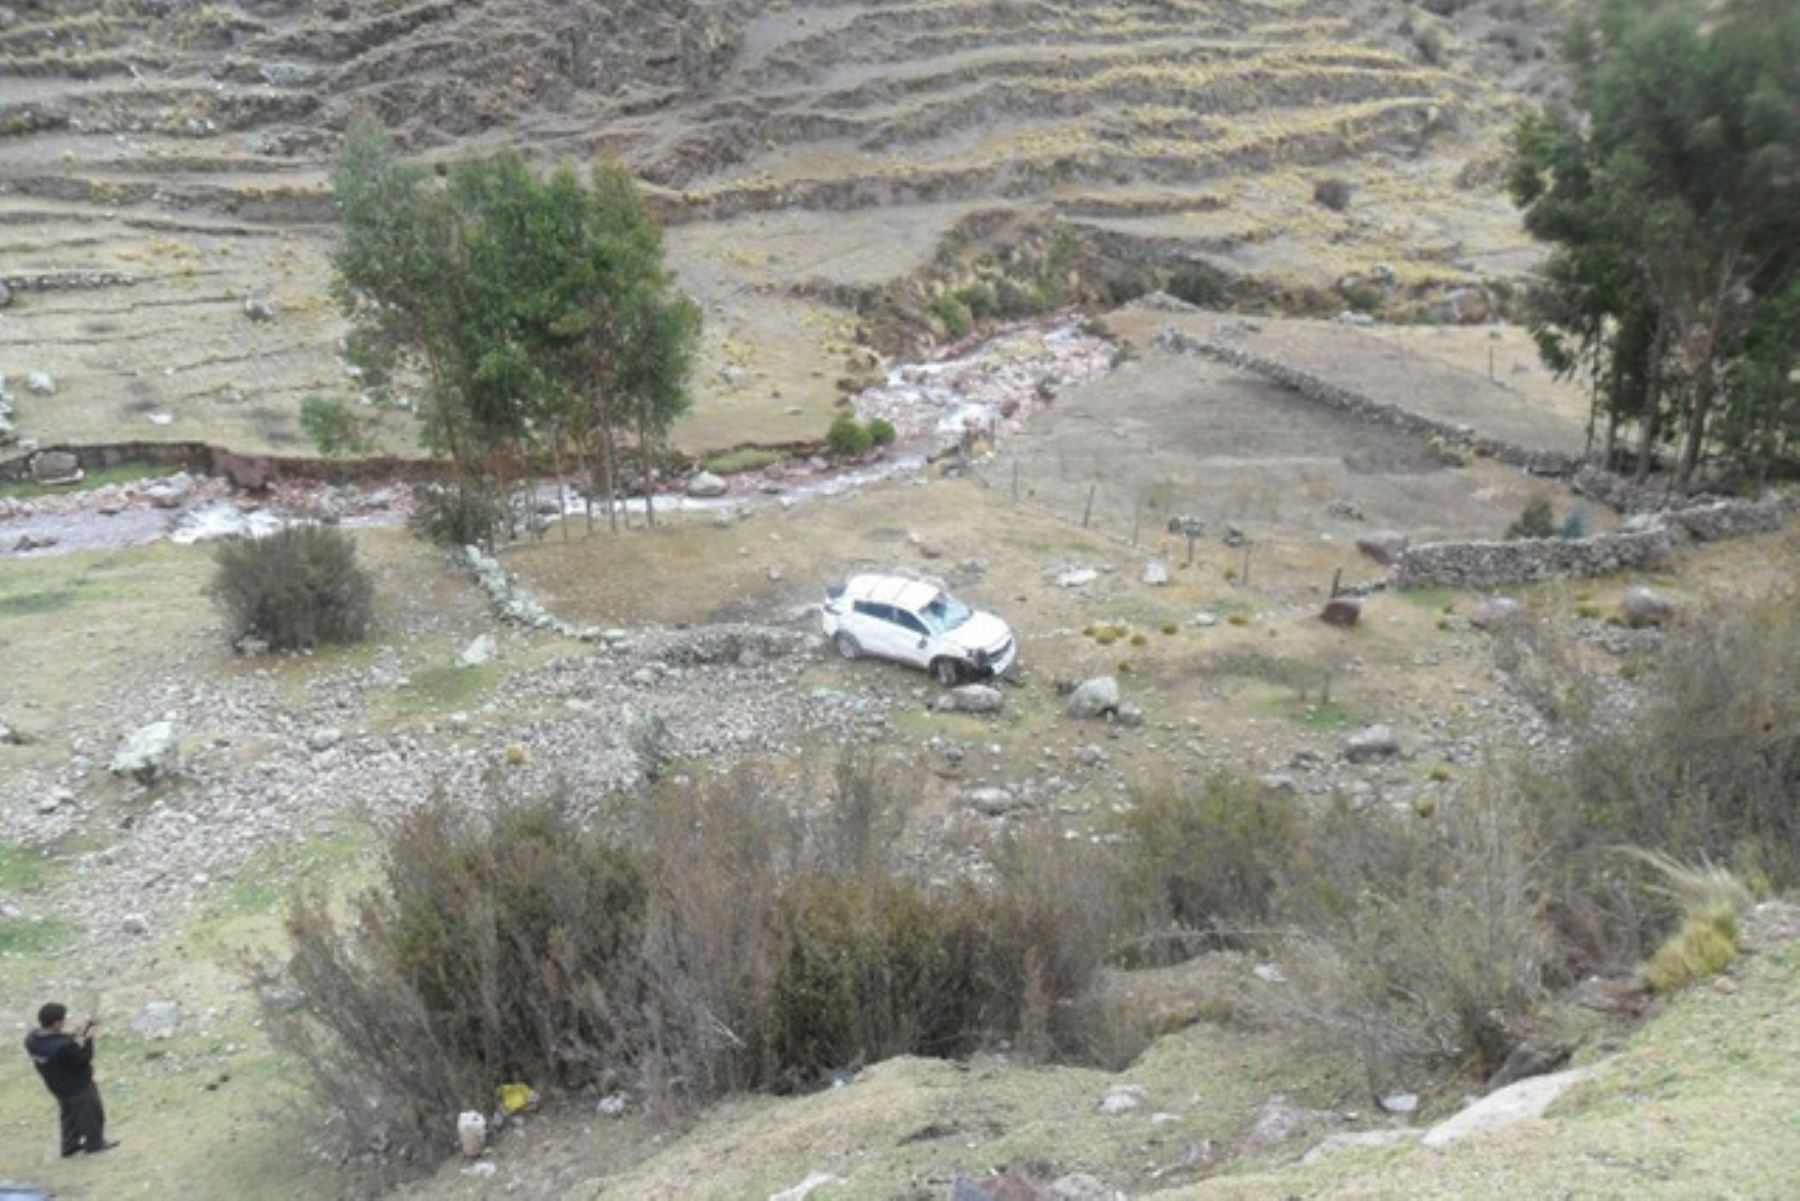 Cuatro personas, entre ellas dos turistas estadounidenses, resultaron heridas en un accidente en la carretera cuando se dirigían a Canchis para visitar la montaña de los siete colores.